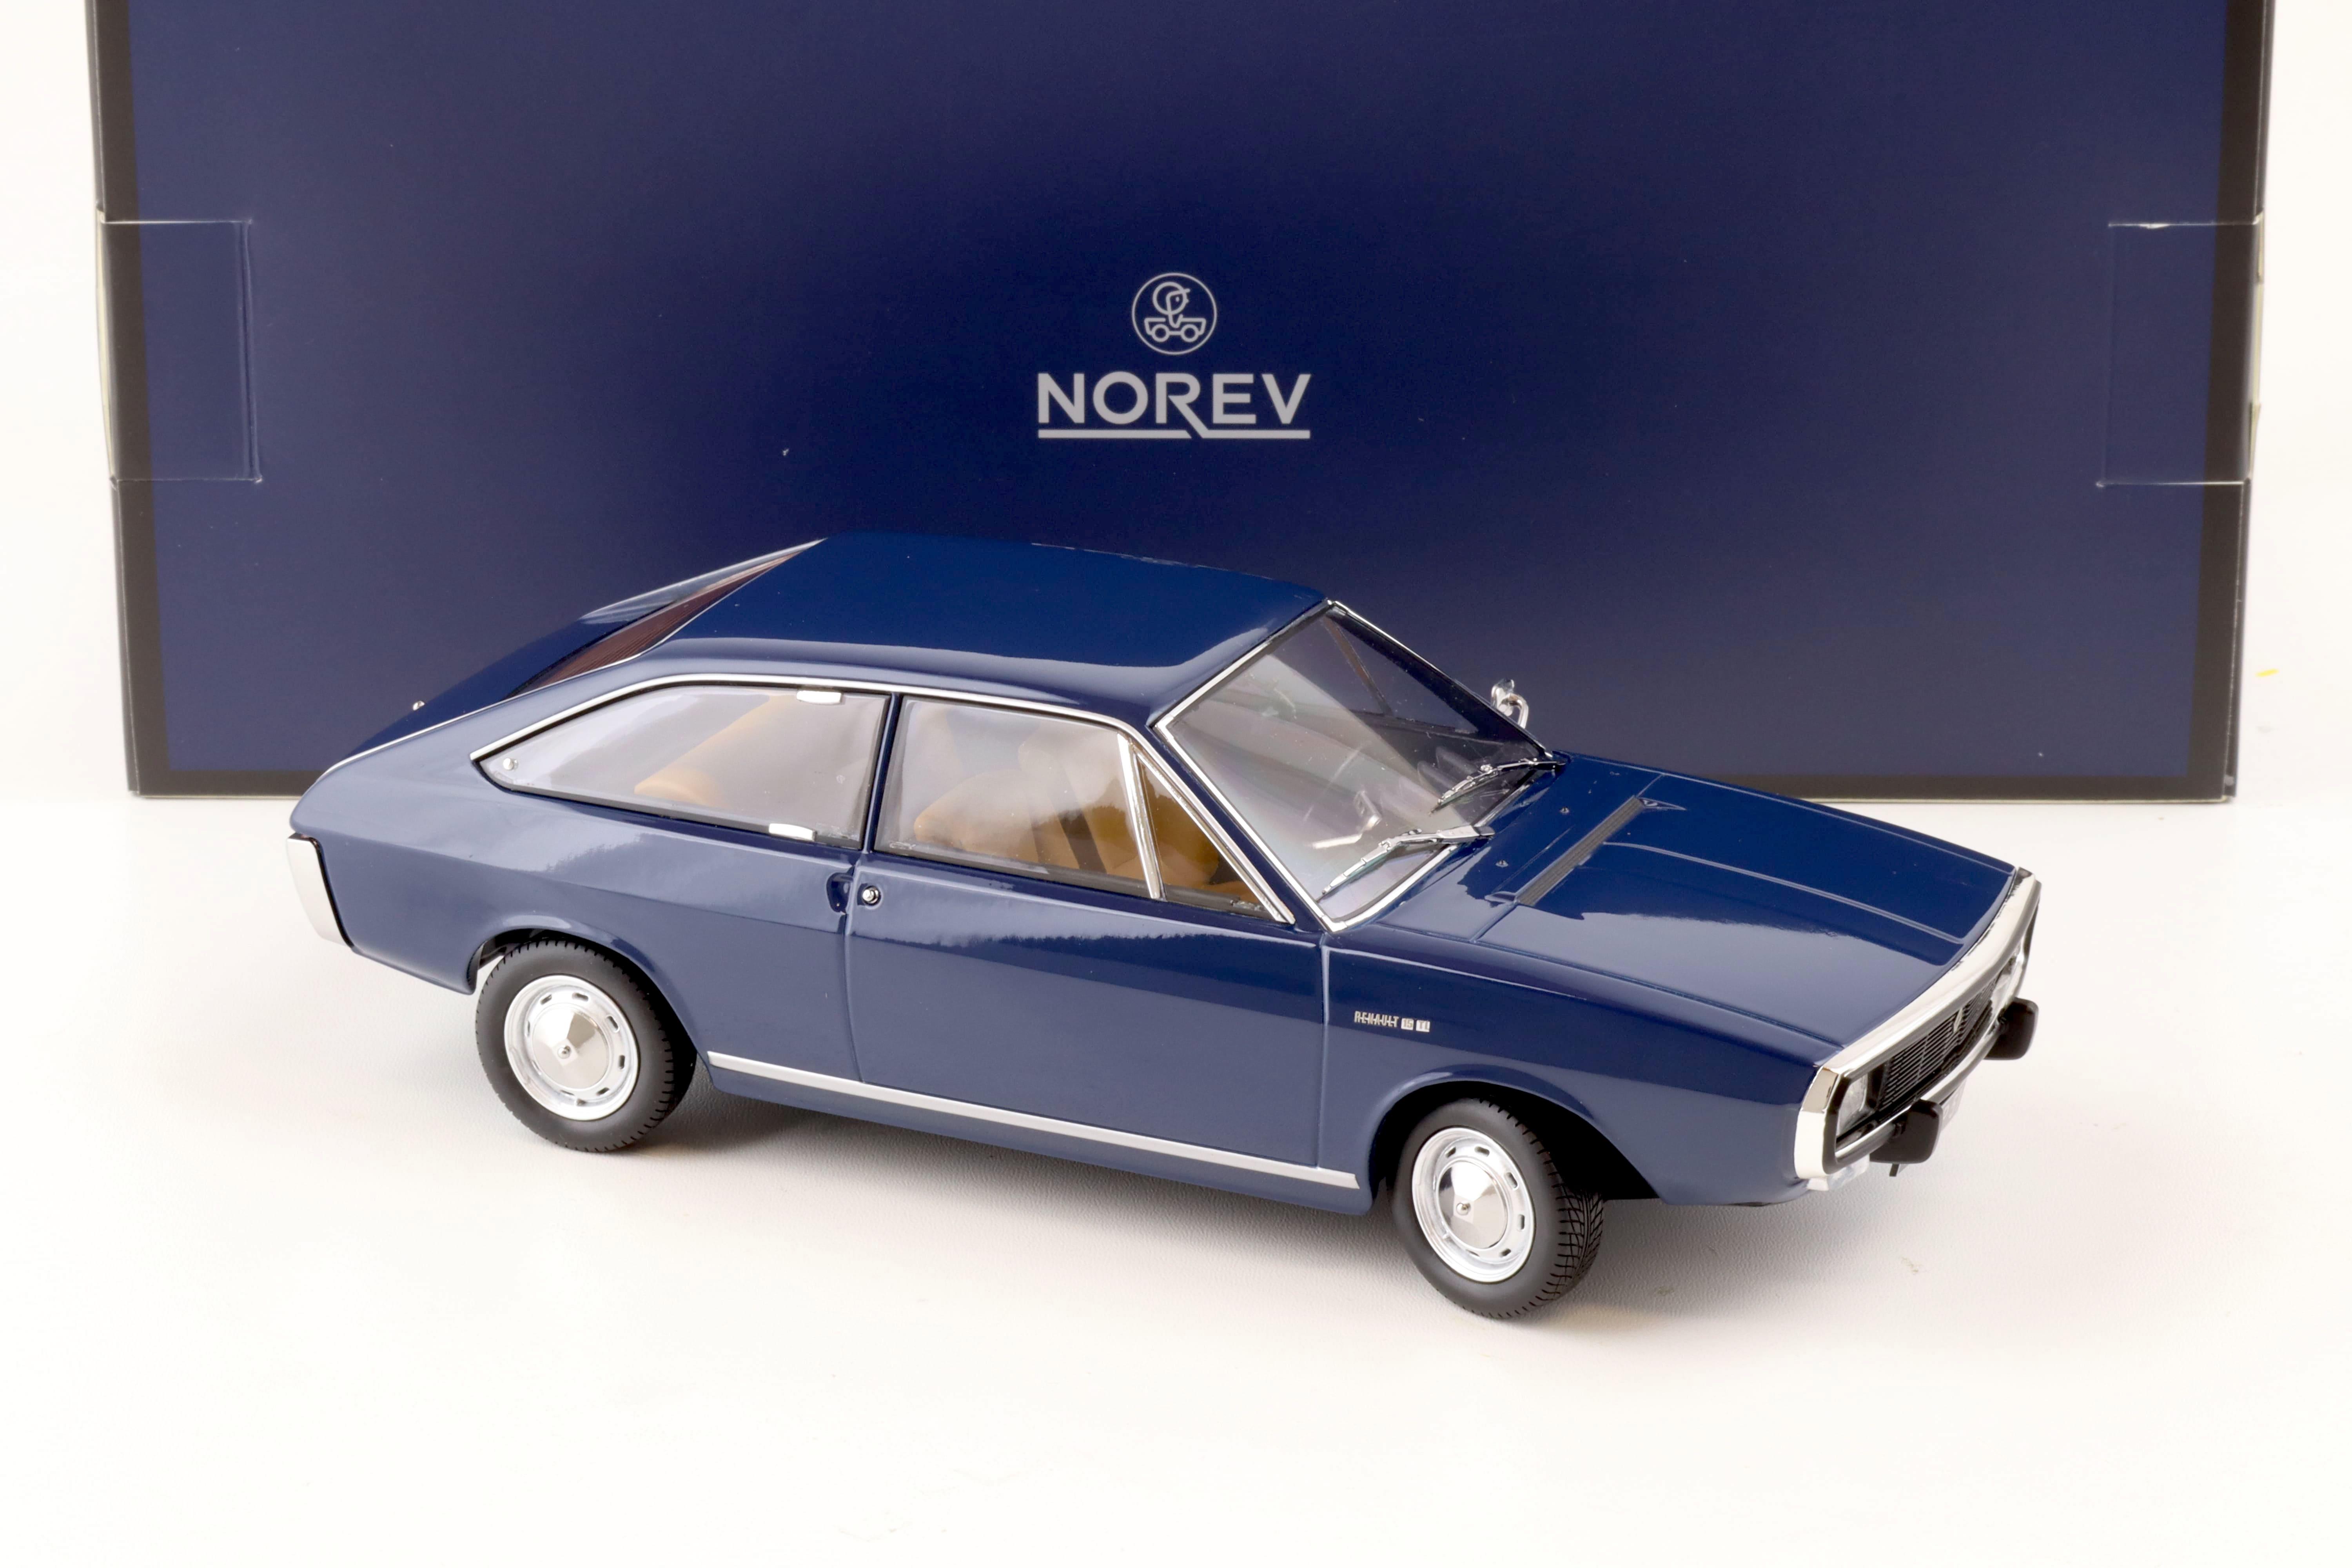 1:18 Norev Renault 15 TL 1973 dark blue - Limited 300 pcs.